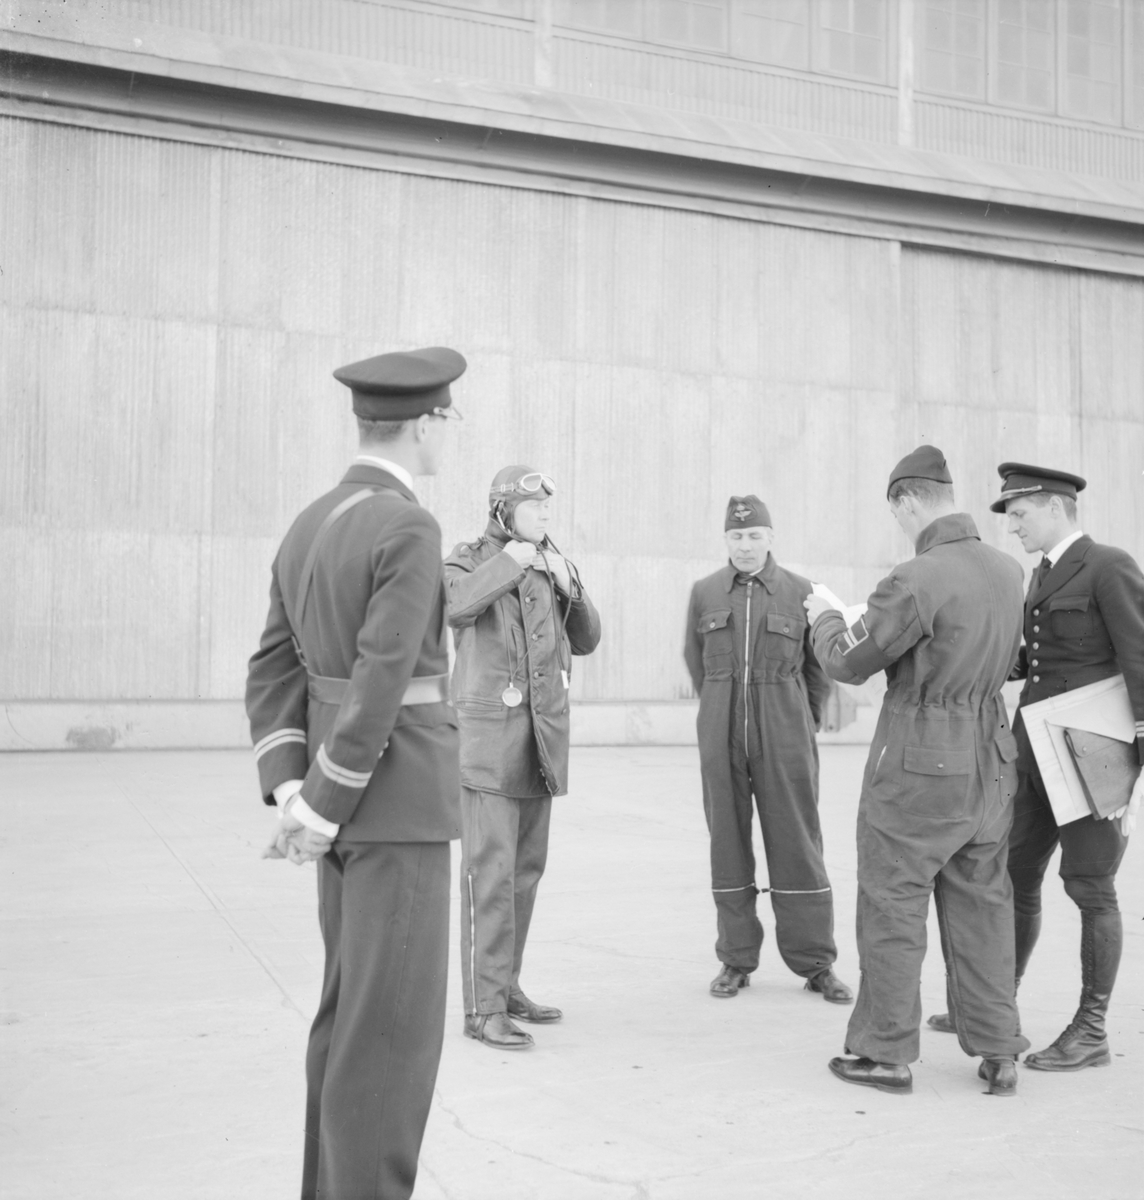 Flygvapenchefen Torsten Friis inspekterar marinspaningskursen på Fårösund, 1937. Fem militärer i samtal.